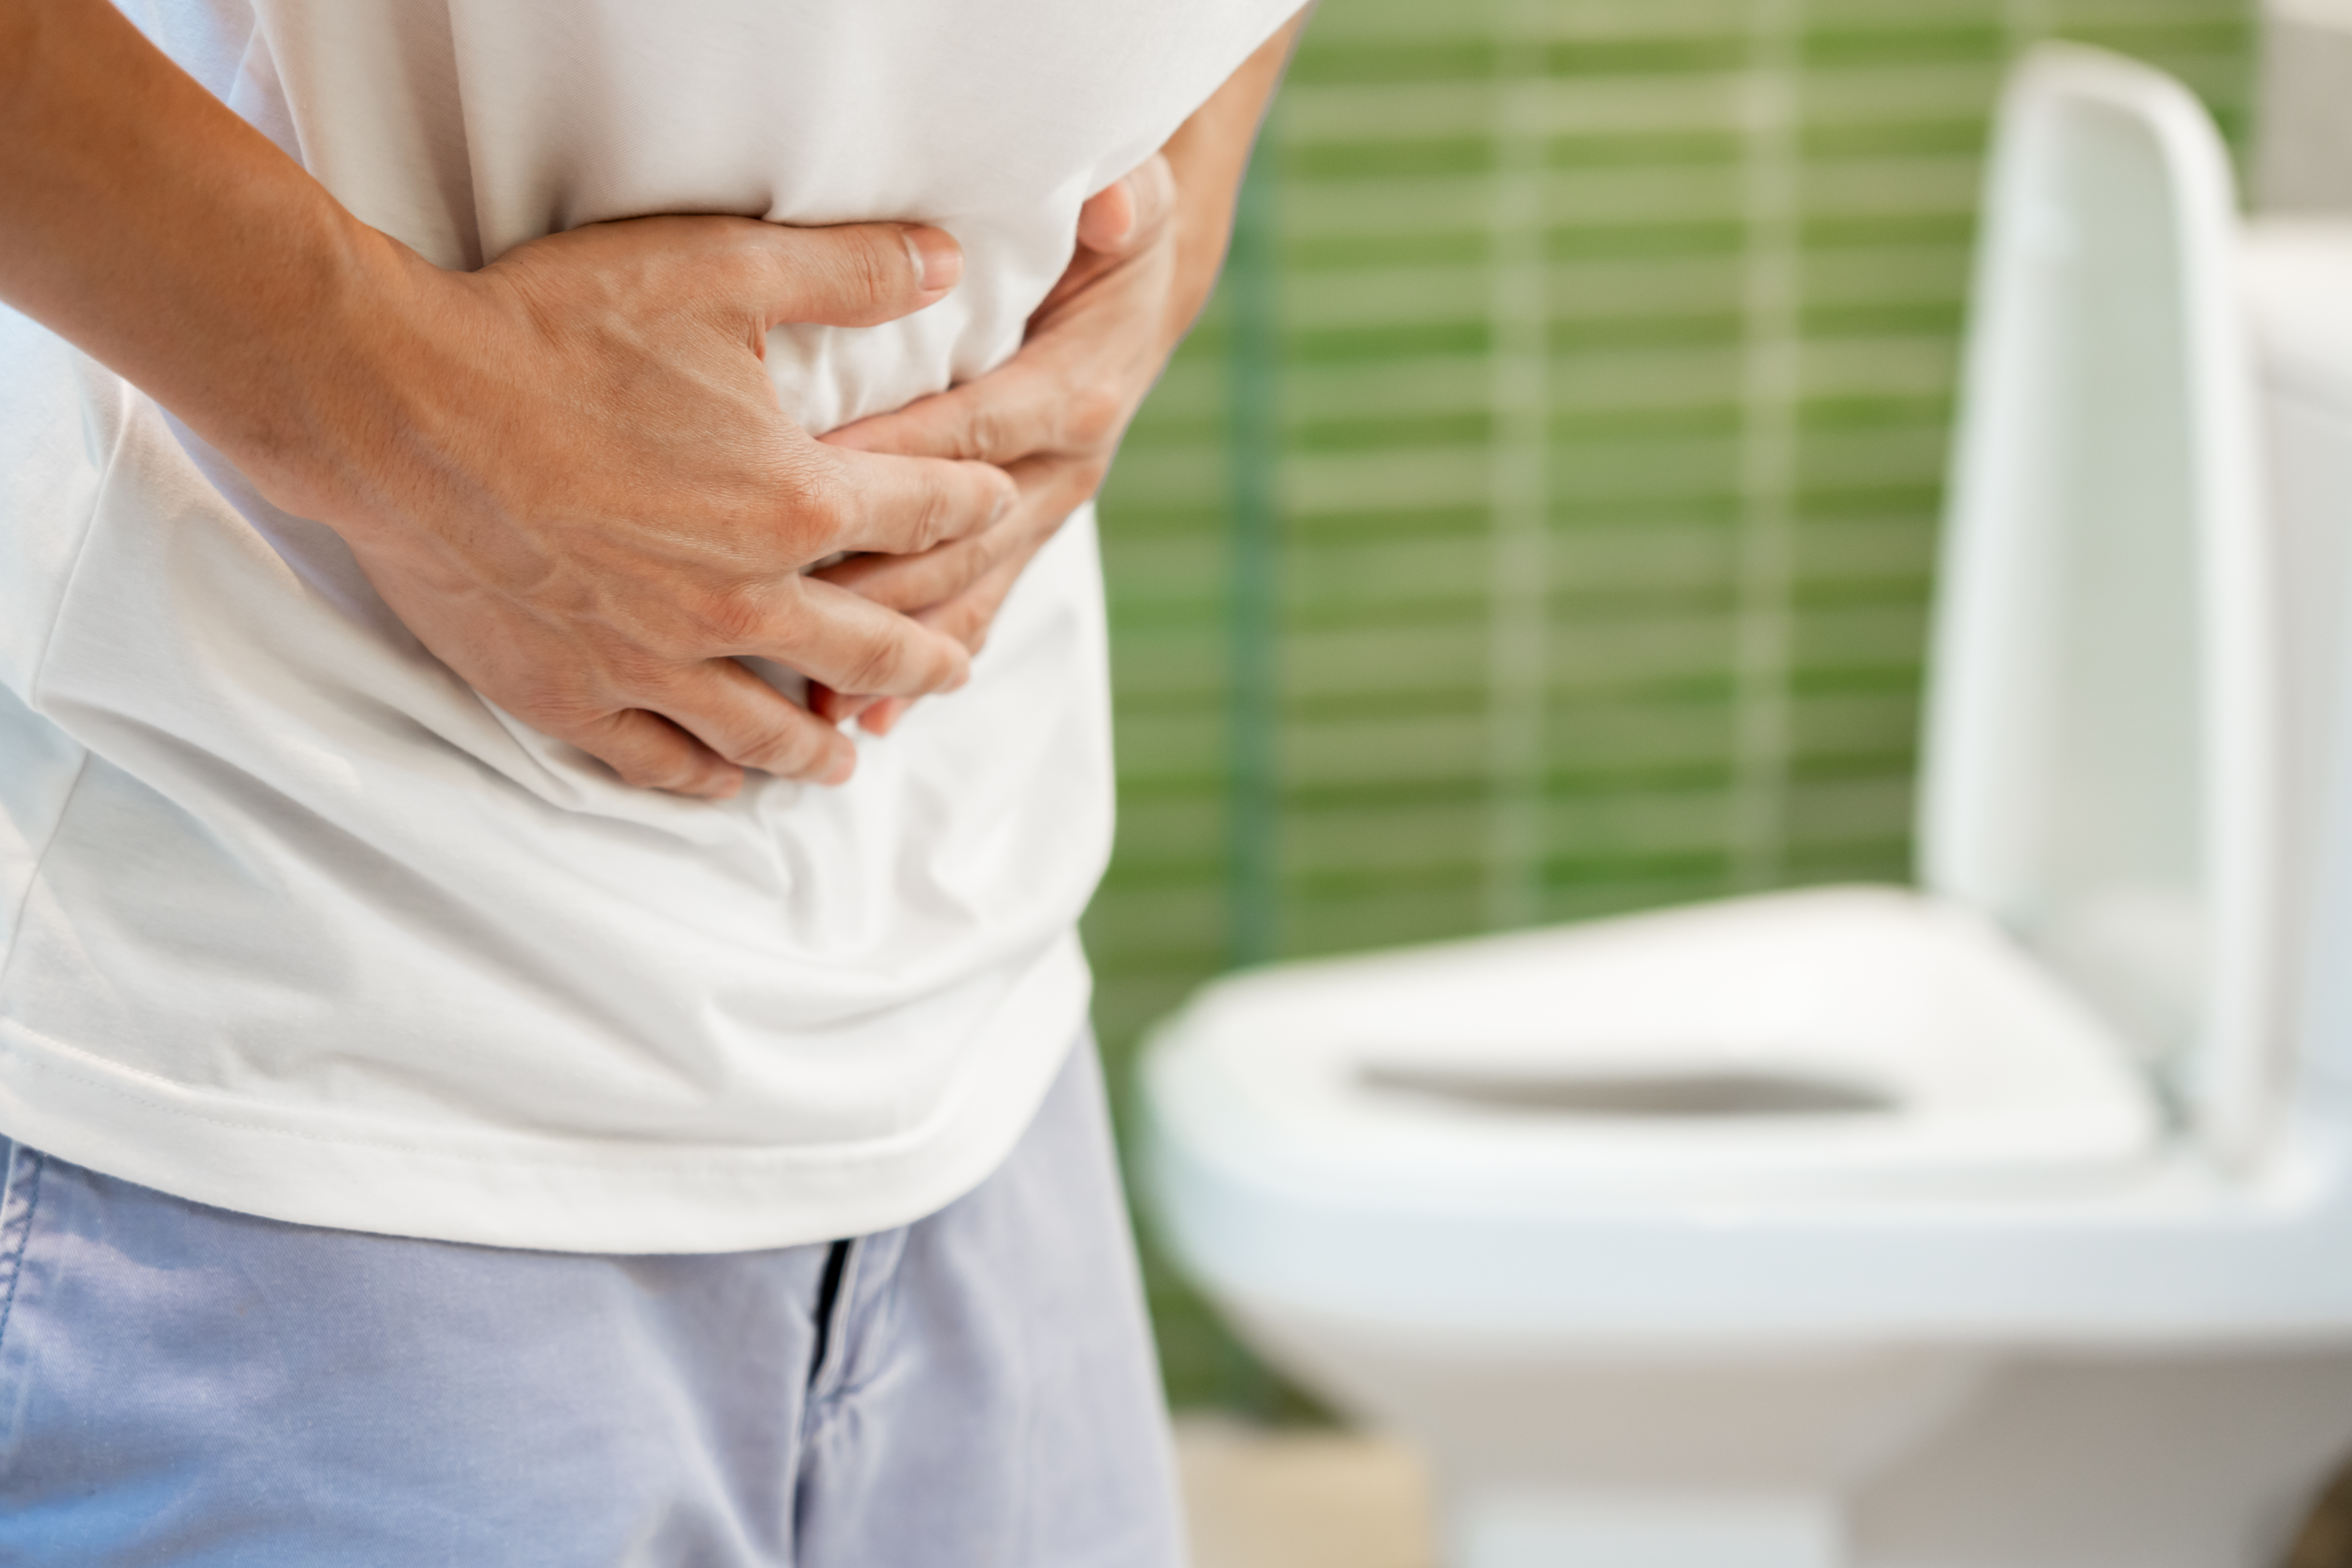 La gestion de la diarrhée avec des remèdes naturels offre une approche douce et holistique pour soulager les symptômes tout en favorisant une récupération saine. © Shisu_ka, Adobe Stock